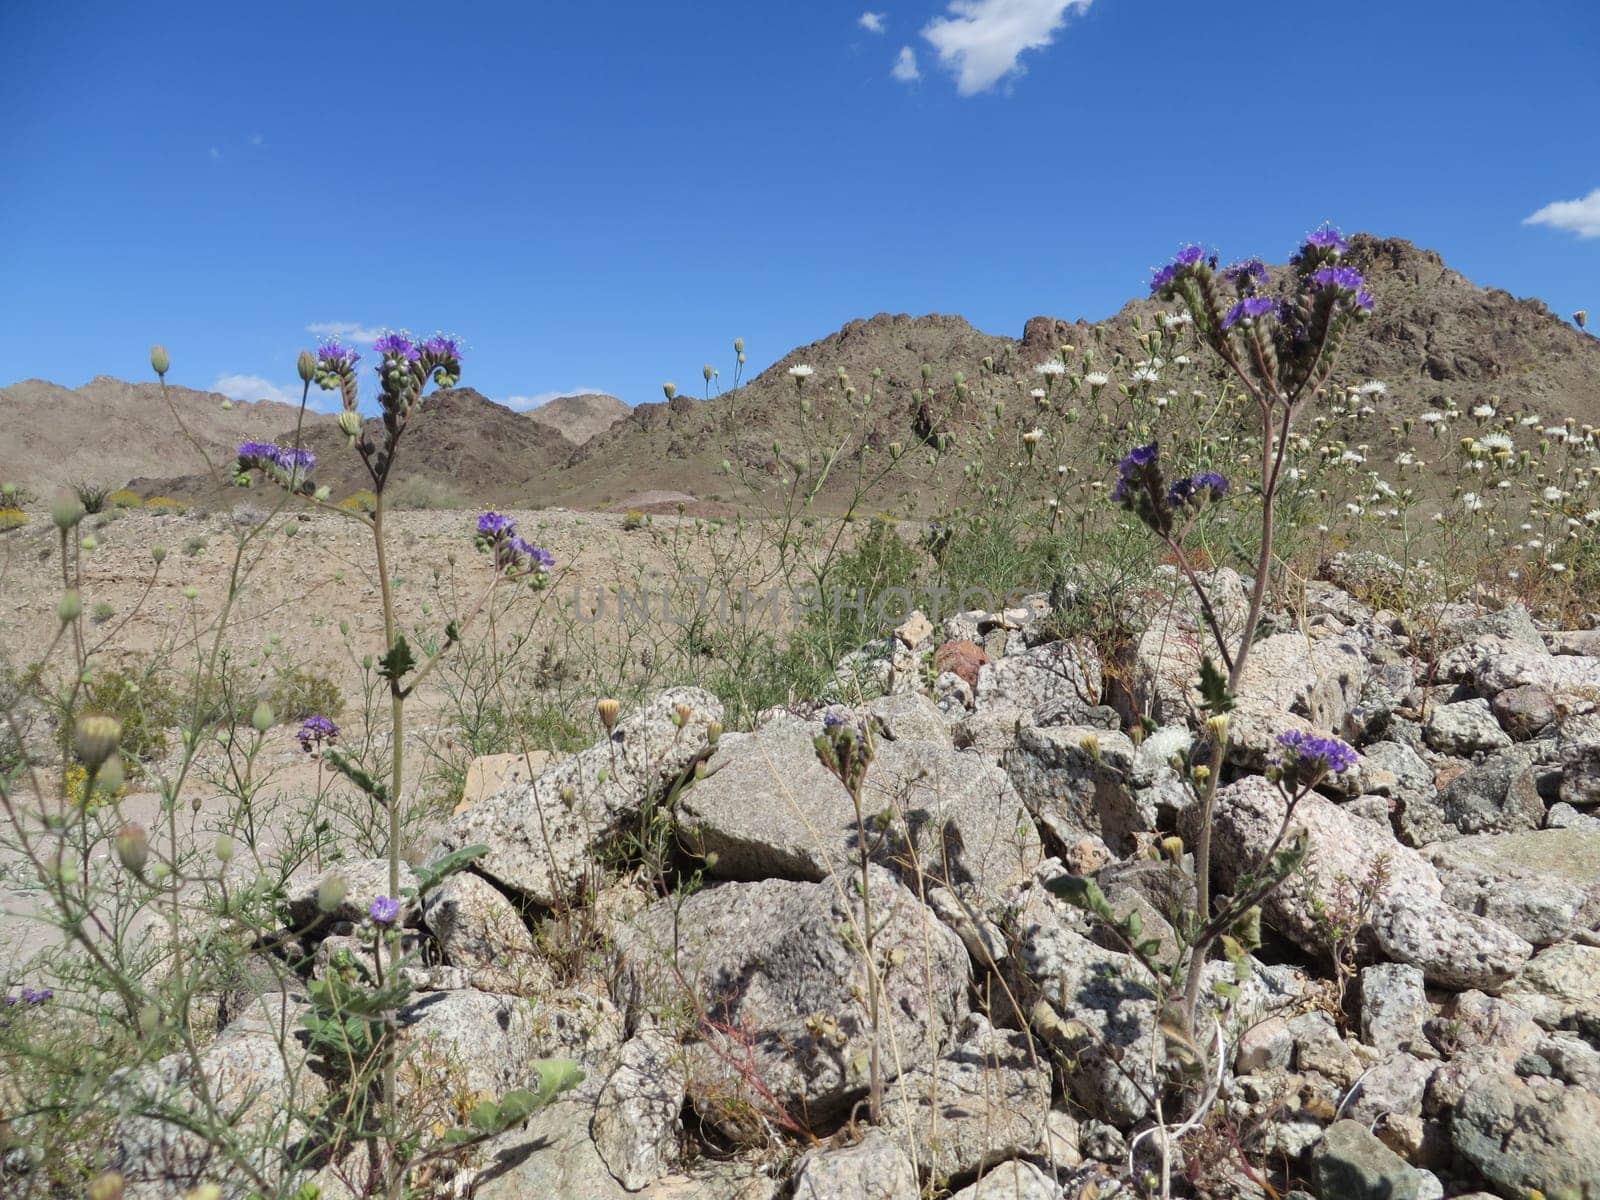 Scenic Wilderness - Arizona Desert - Arid Rocky Terrain. High quality photo